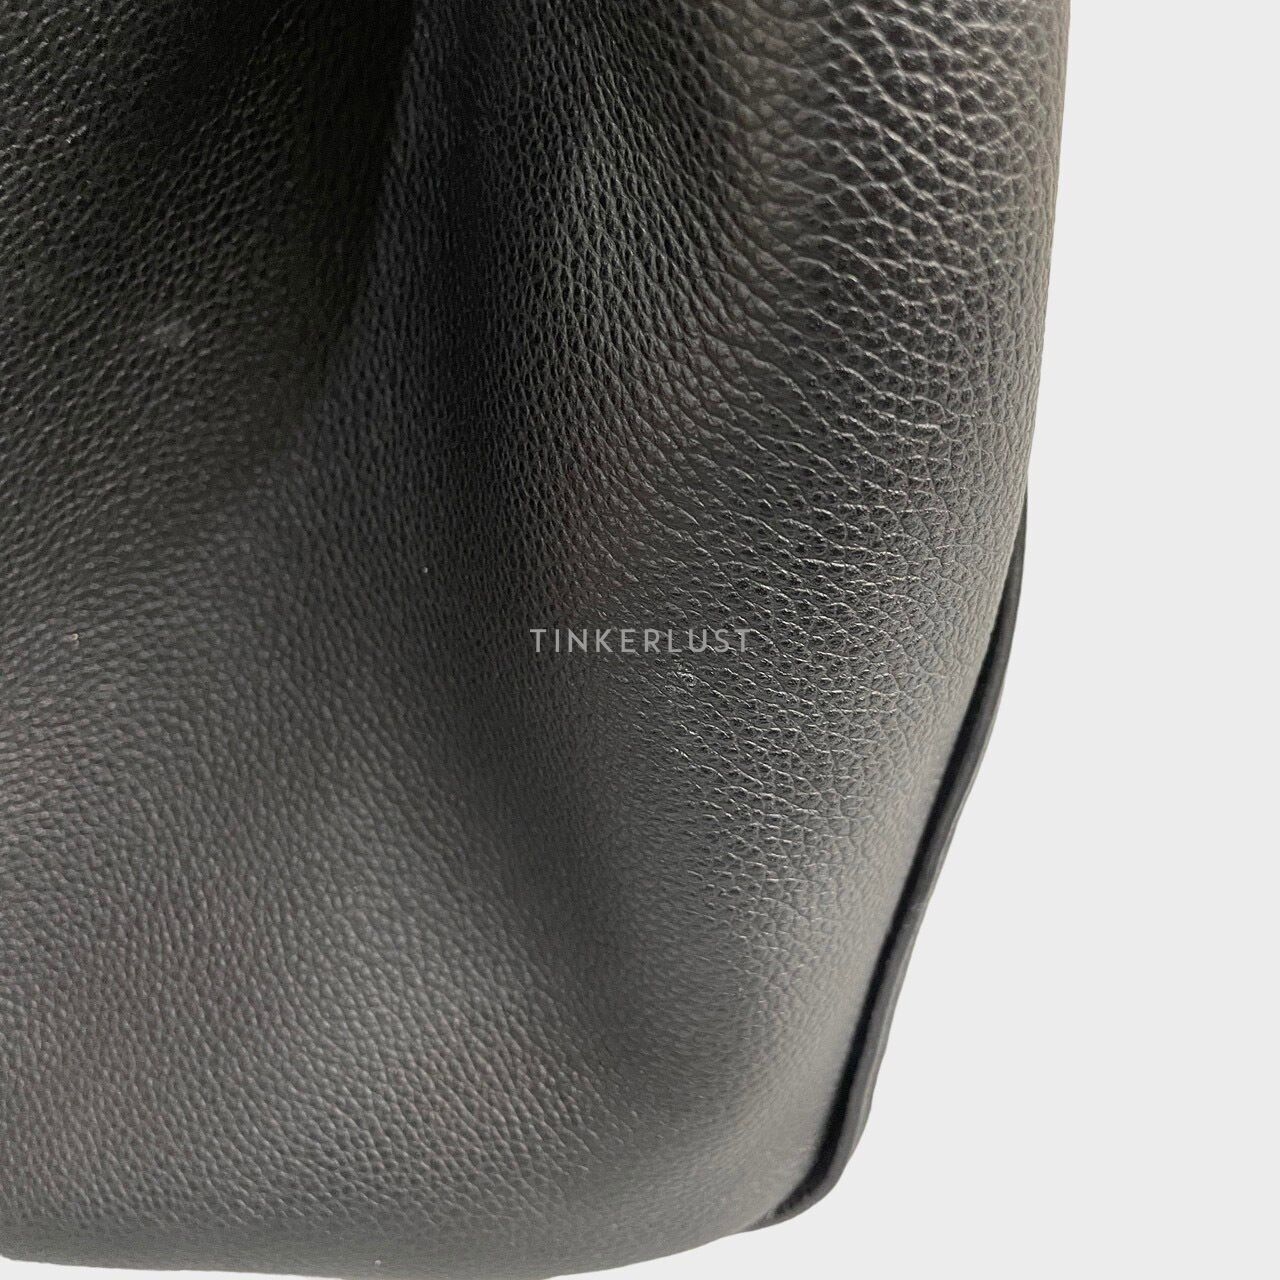 Louis Vuitton Empreinte Trocadero Black Shoulder Bag 2015